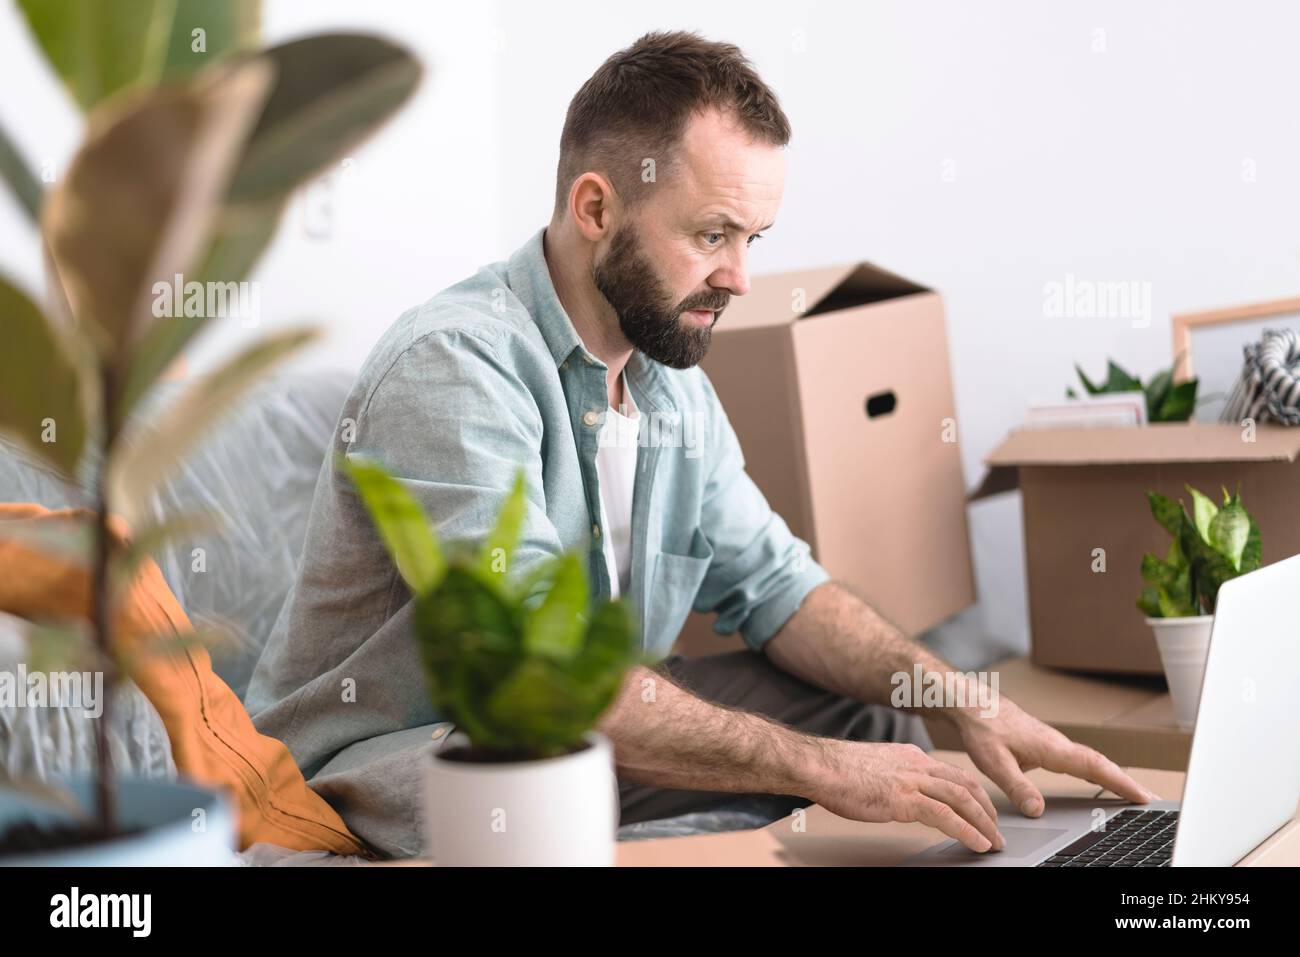 Un homme mûr assis dans une pièce désordonnée avec des boîtes en carton et des plantes, en utilisant un ordinateur portable.Un concept en mouvement. Banque D'Images